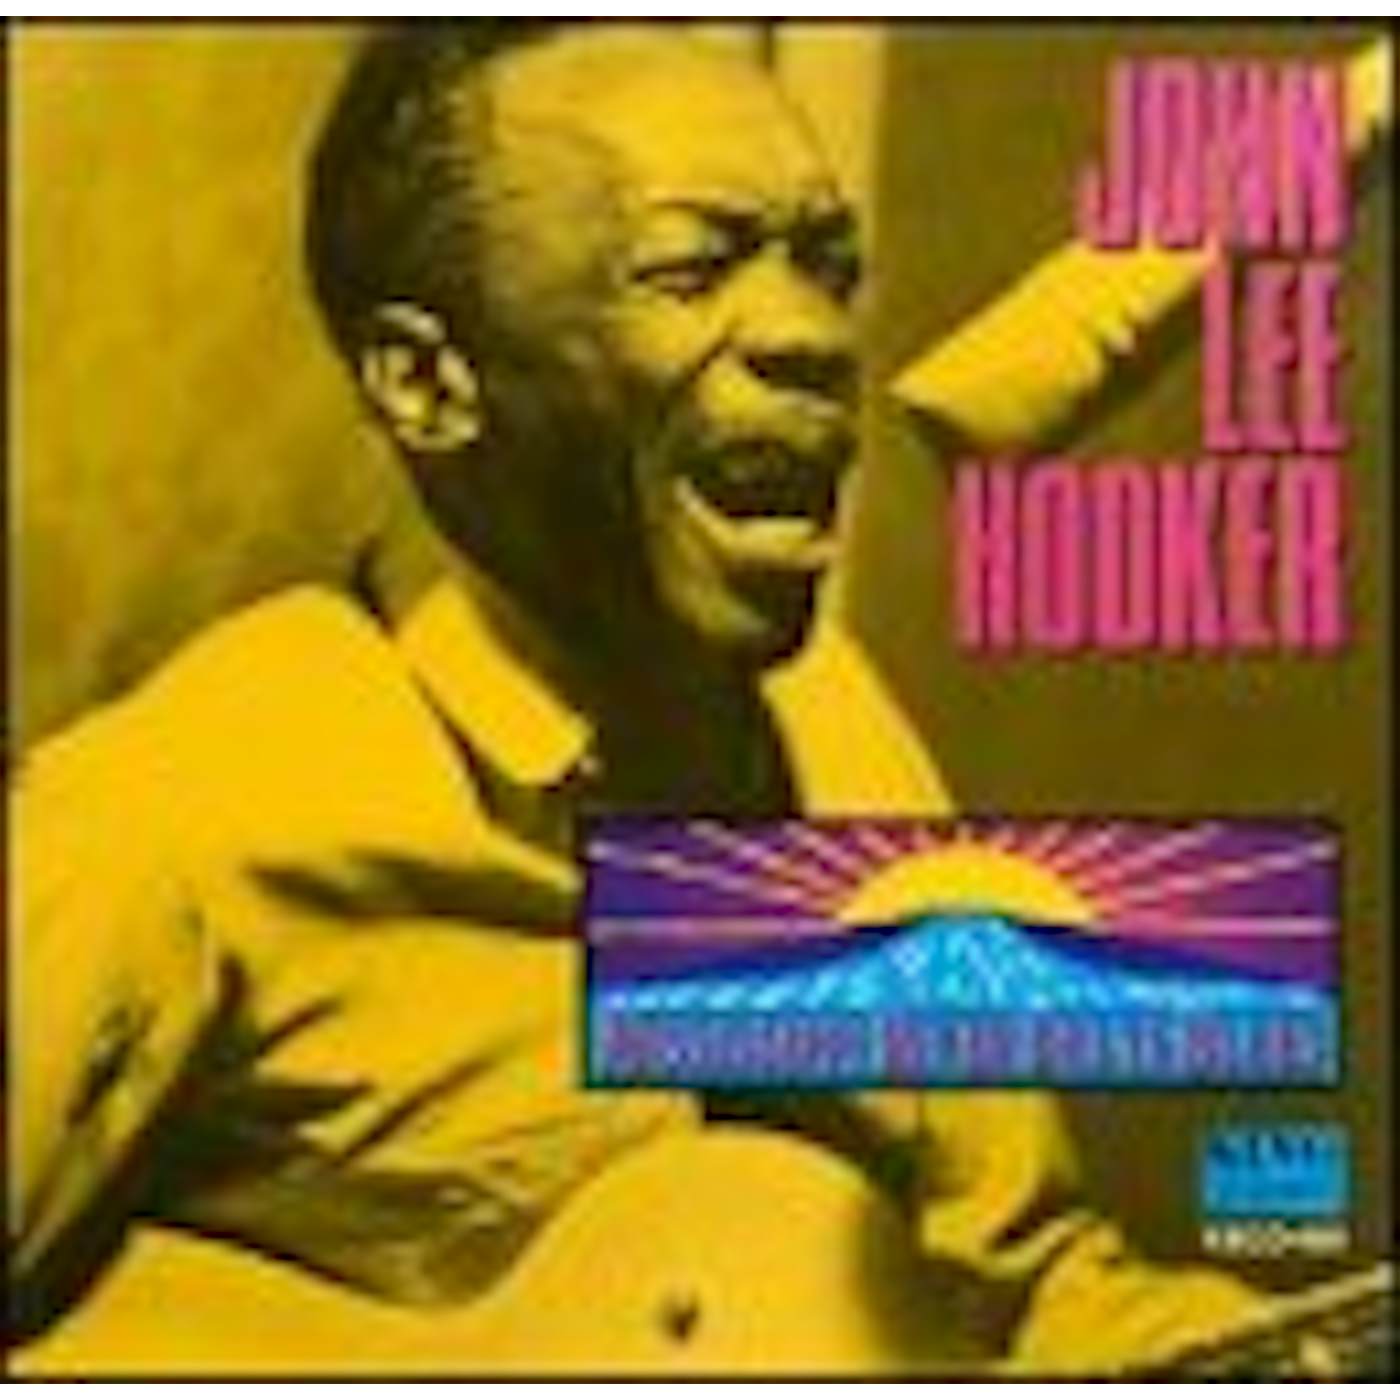 John Lee Hooker MISSISSIPPI RIVER DELTA BLUES CD